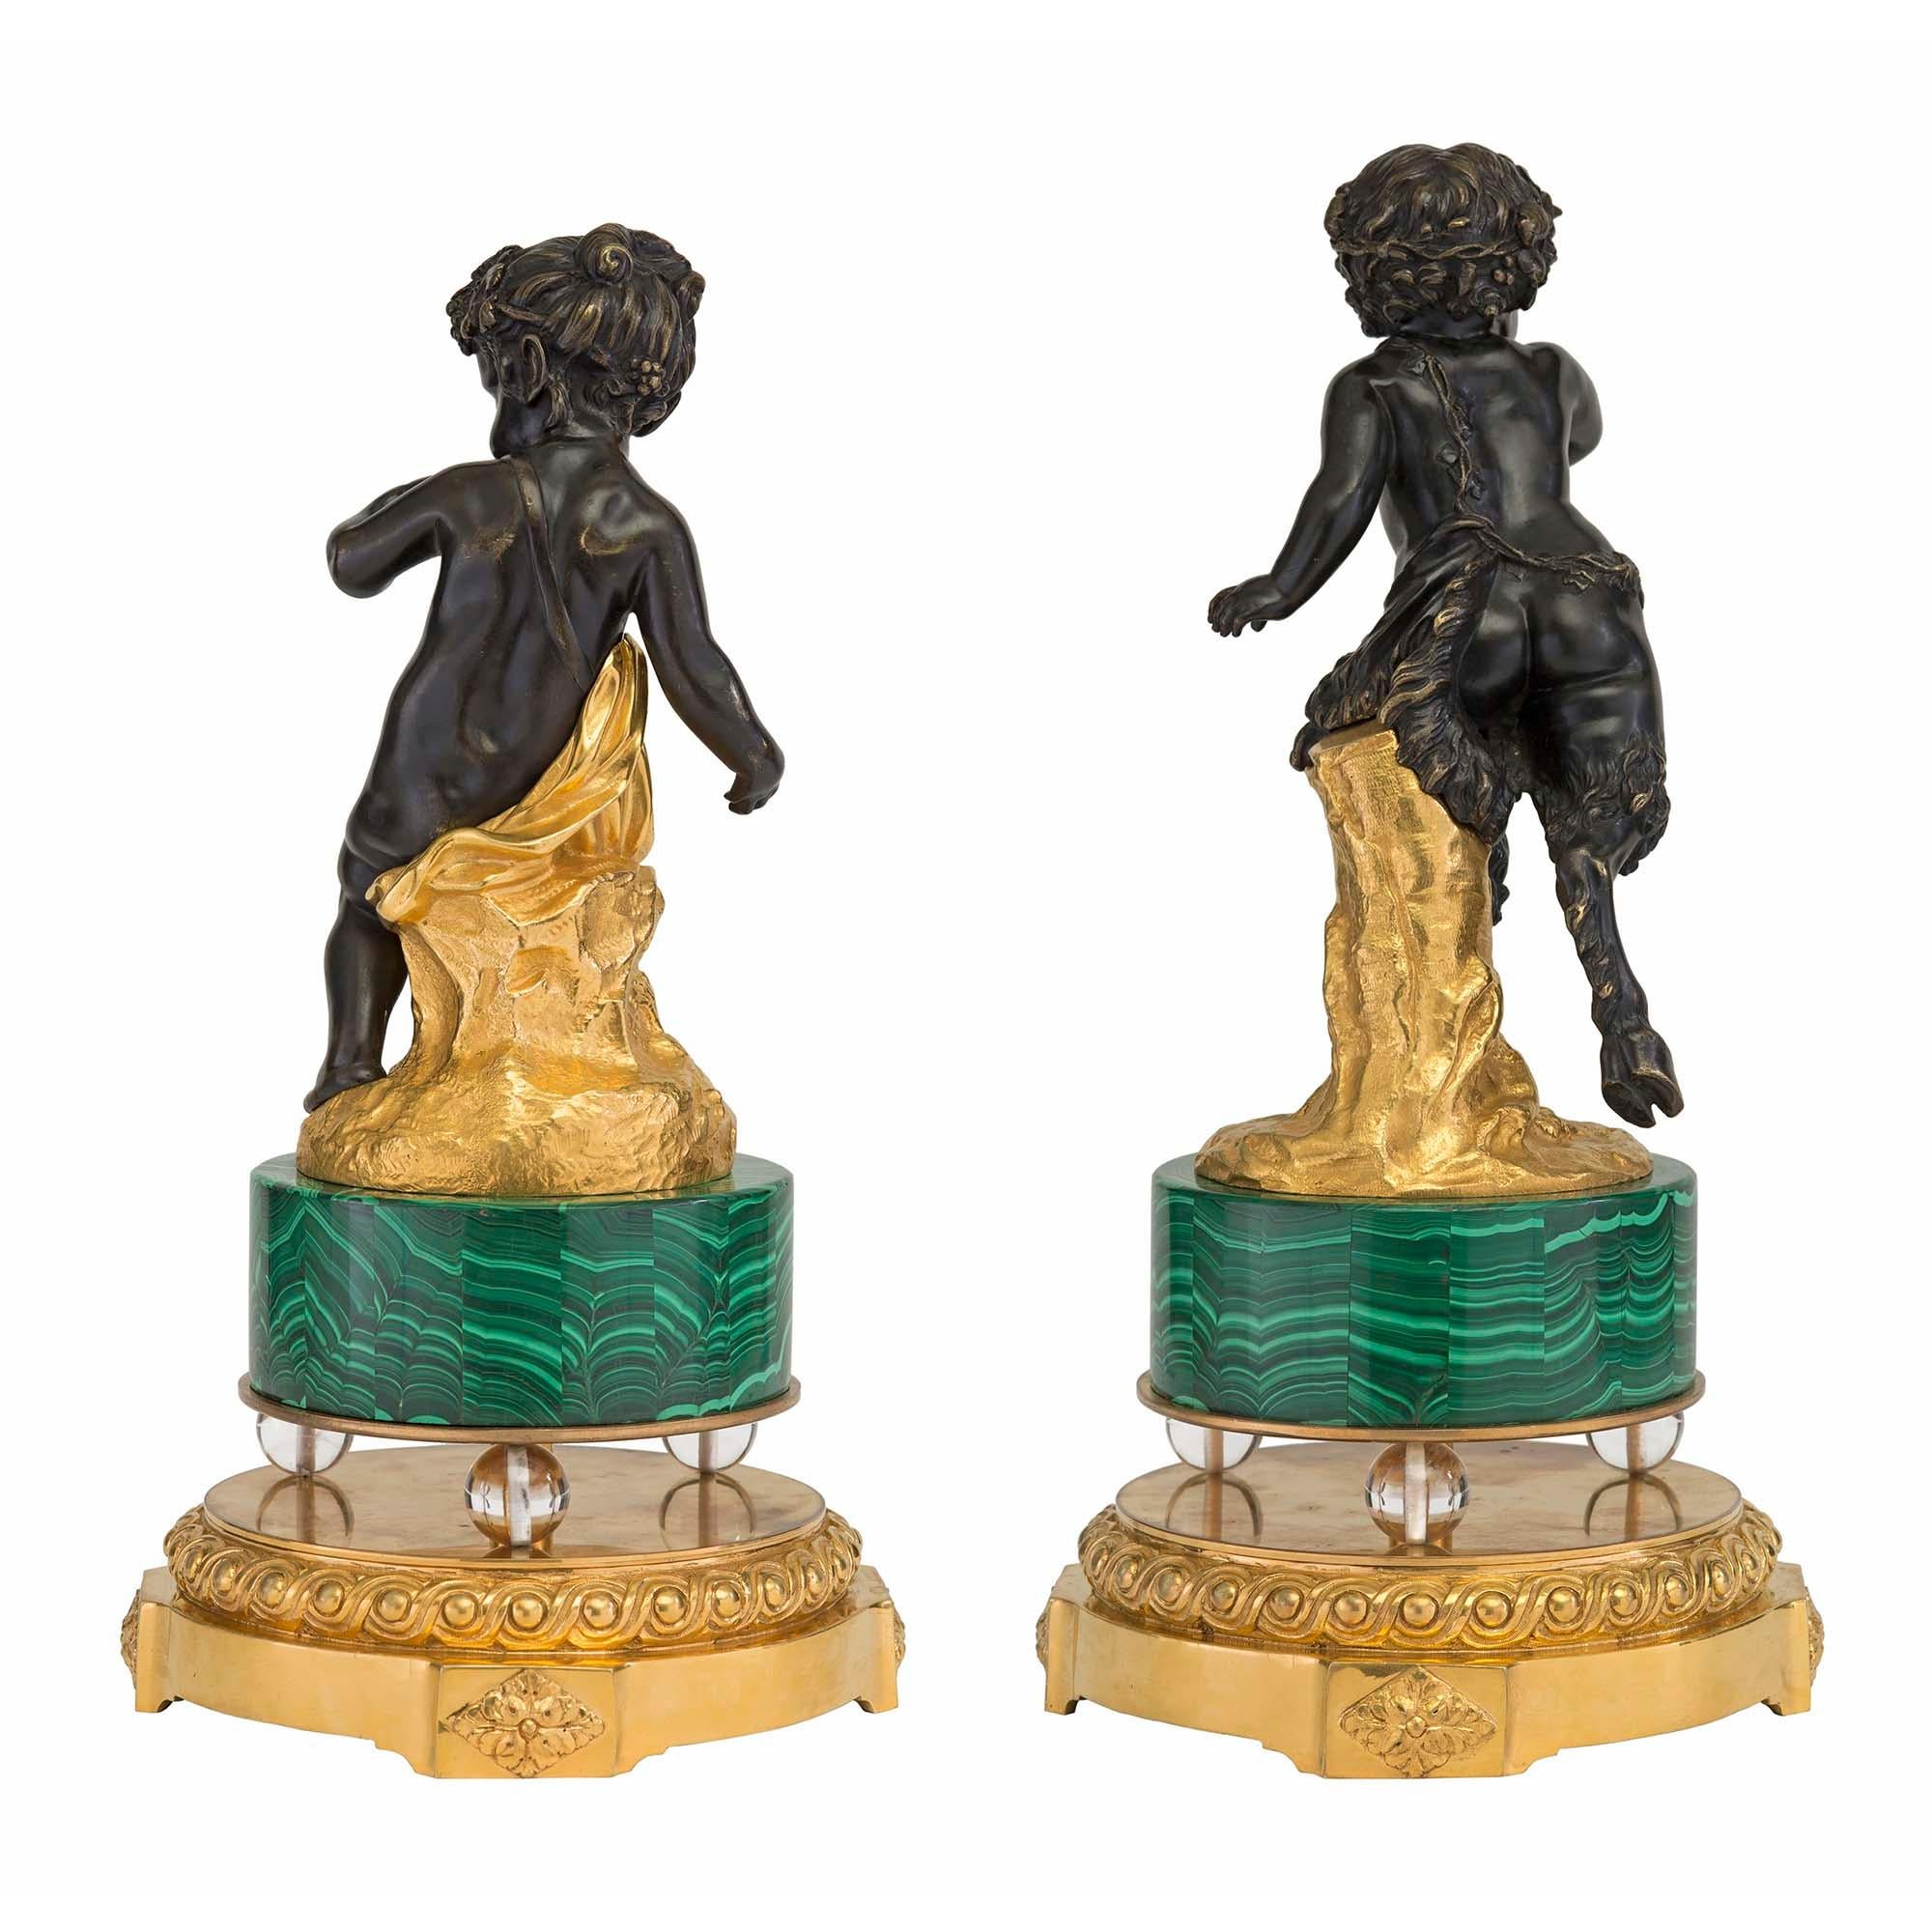 Une belle et unique paire de statues françaises du 19ème siècle, de style Louis XVI, en bronze patiné, bronze doré, malachite et cristal. Chaque statue de haute qualité est surélevée par une base circulaire en bronze doré avec des rosettes et un